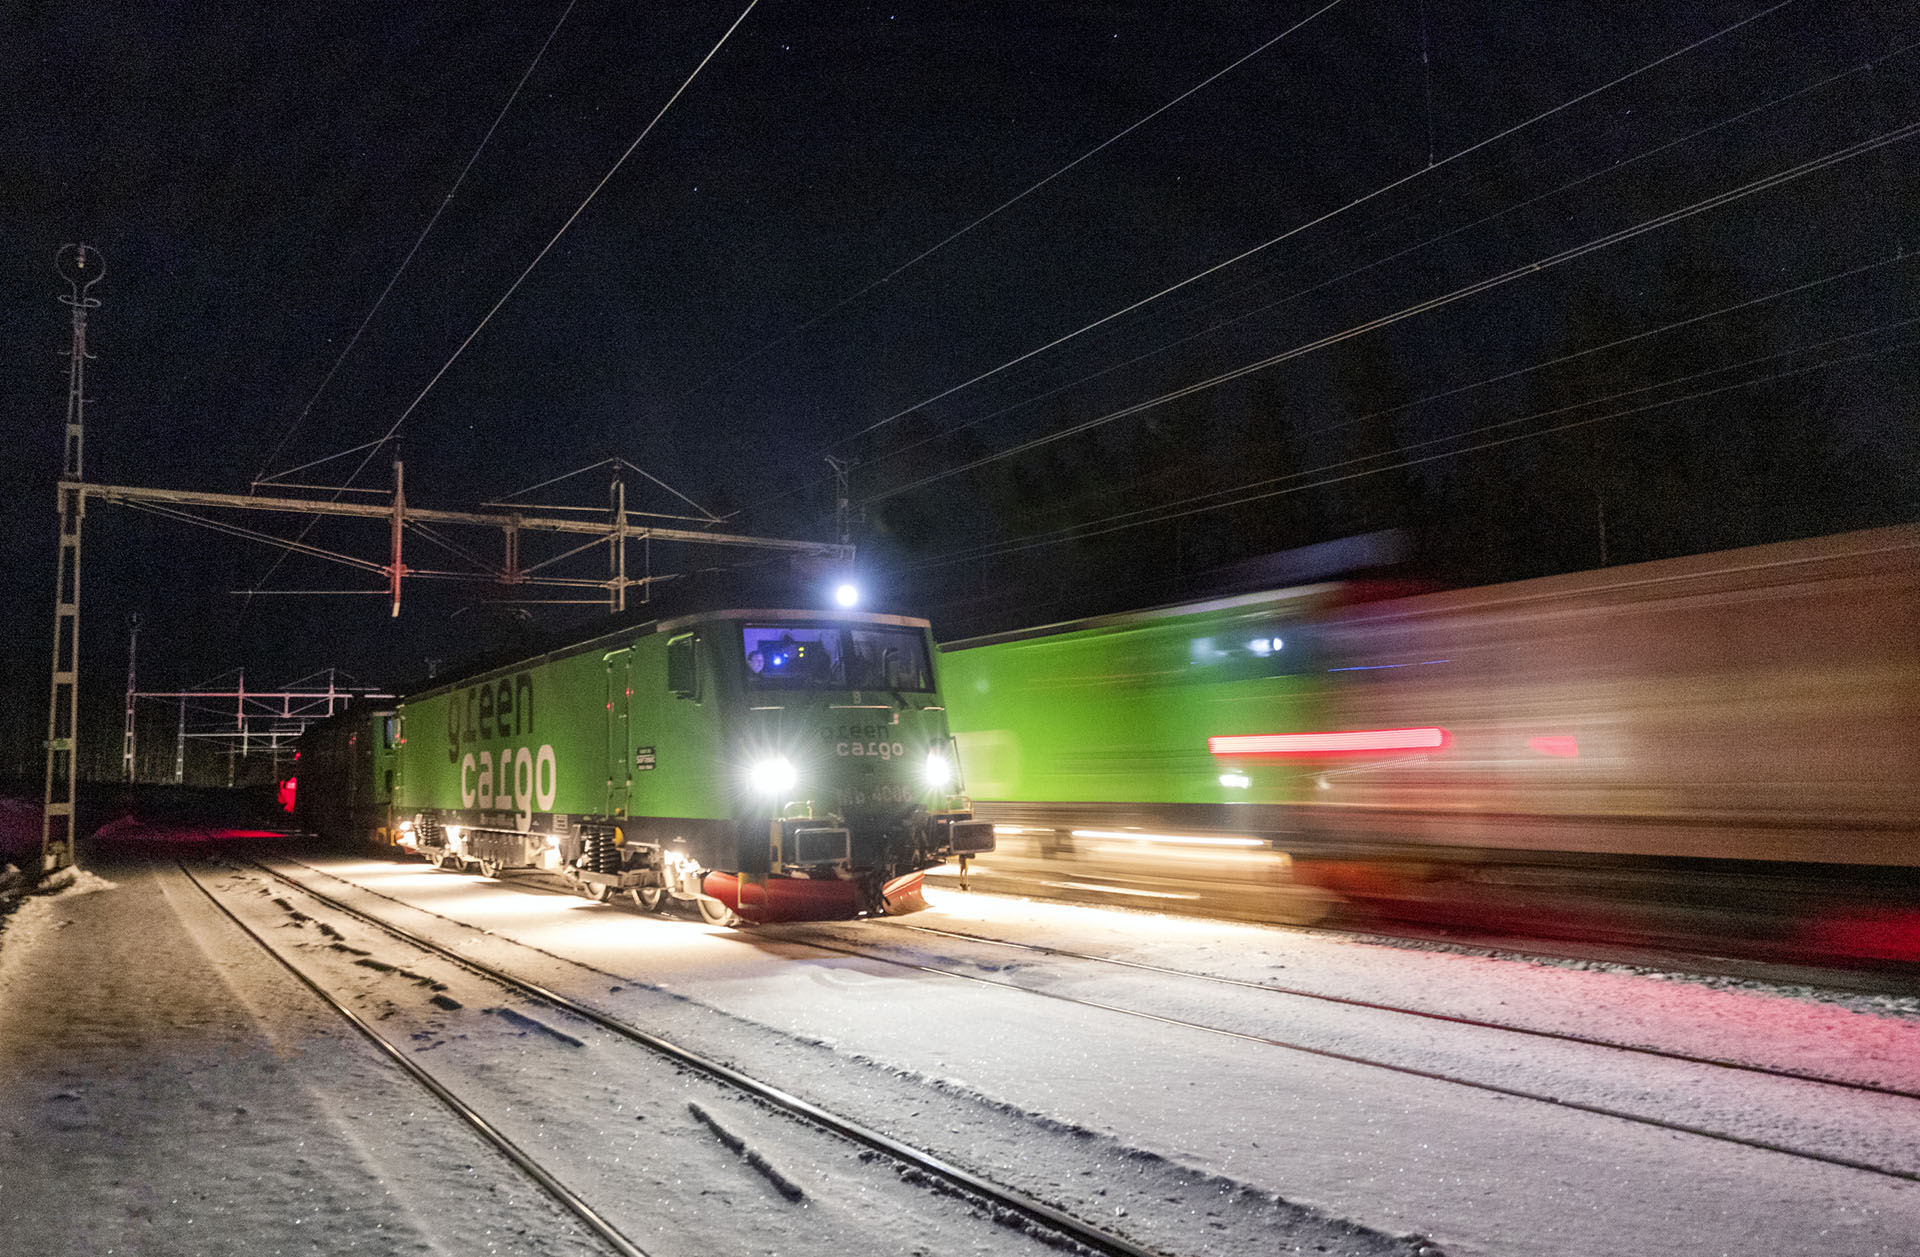 Foto: HJALMAR ARVIDSSON Leveransen av de sovvagnar som skulle använts i nattågen till Hamburg har försenats och SJ lånar i stället ett antal sovvagnar som fram till nyligen gick i nattågen mellan Salzburg och Sylt. Den första vagnen kom i går, tisdag 2 augusti, till Malmö.